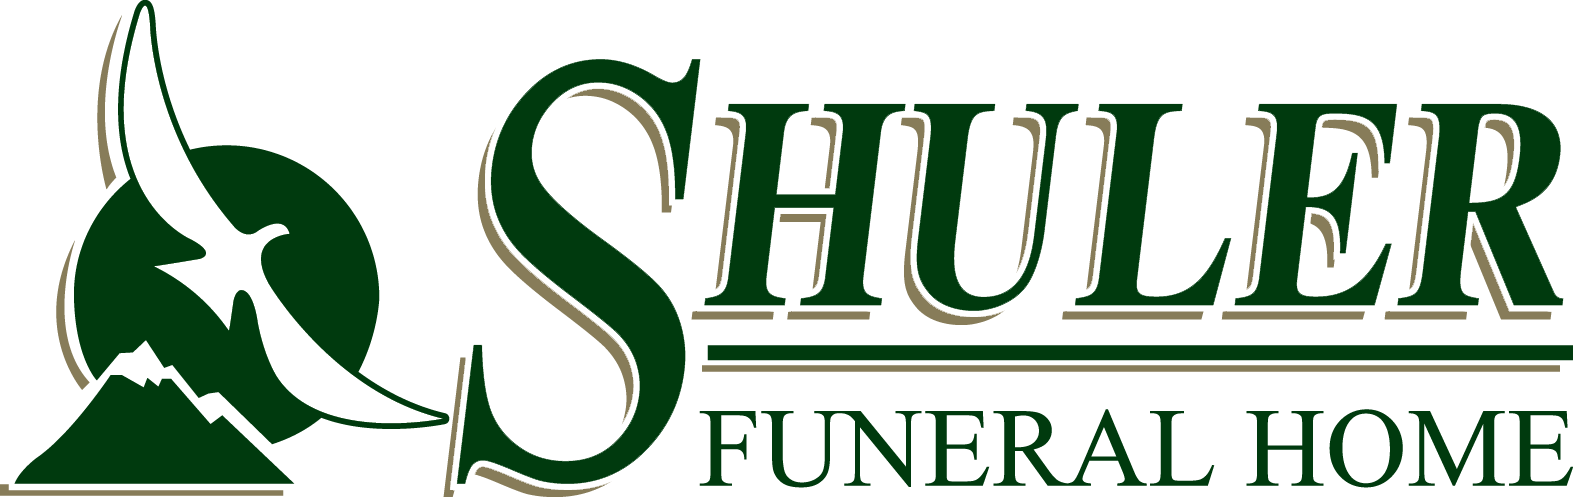 Shuler Funeral Home Logo